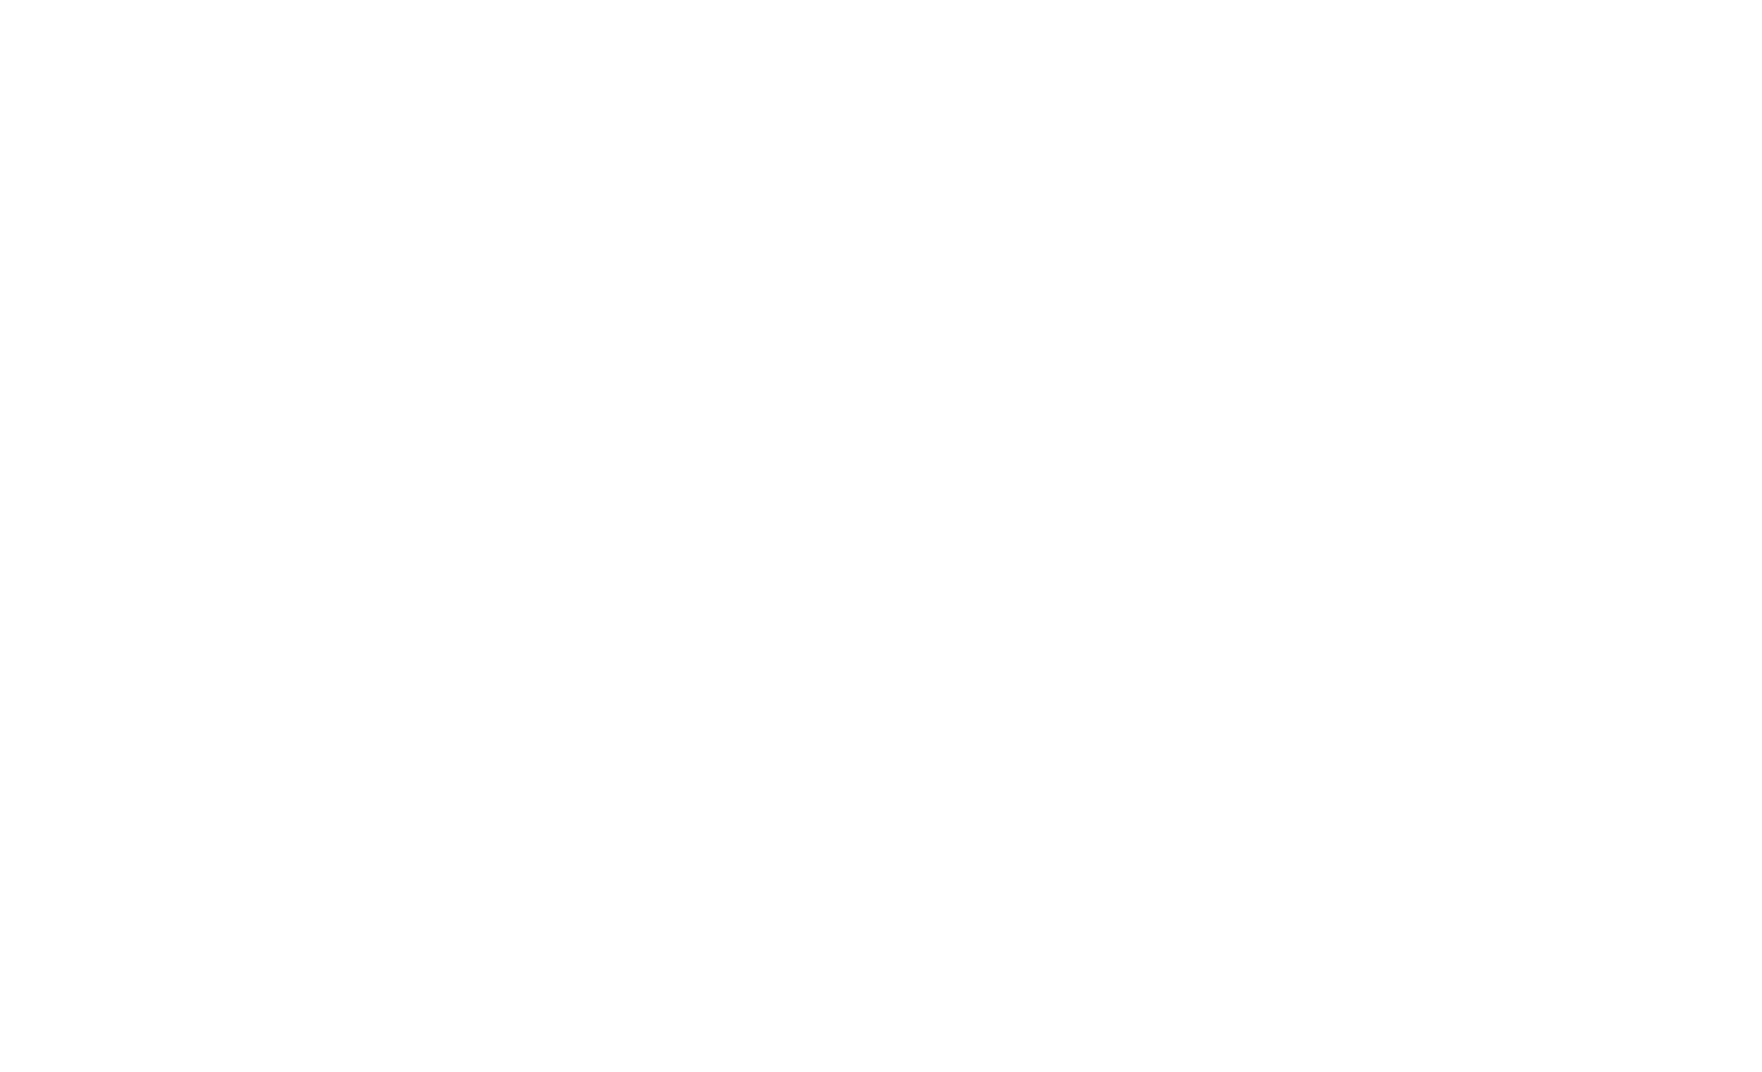 Miami Tyres White Logo